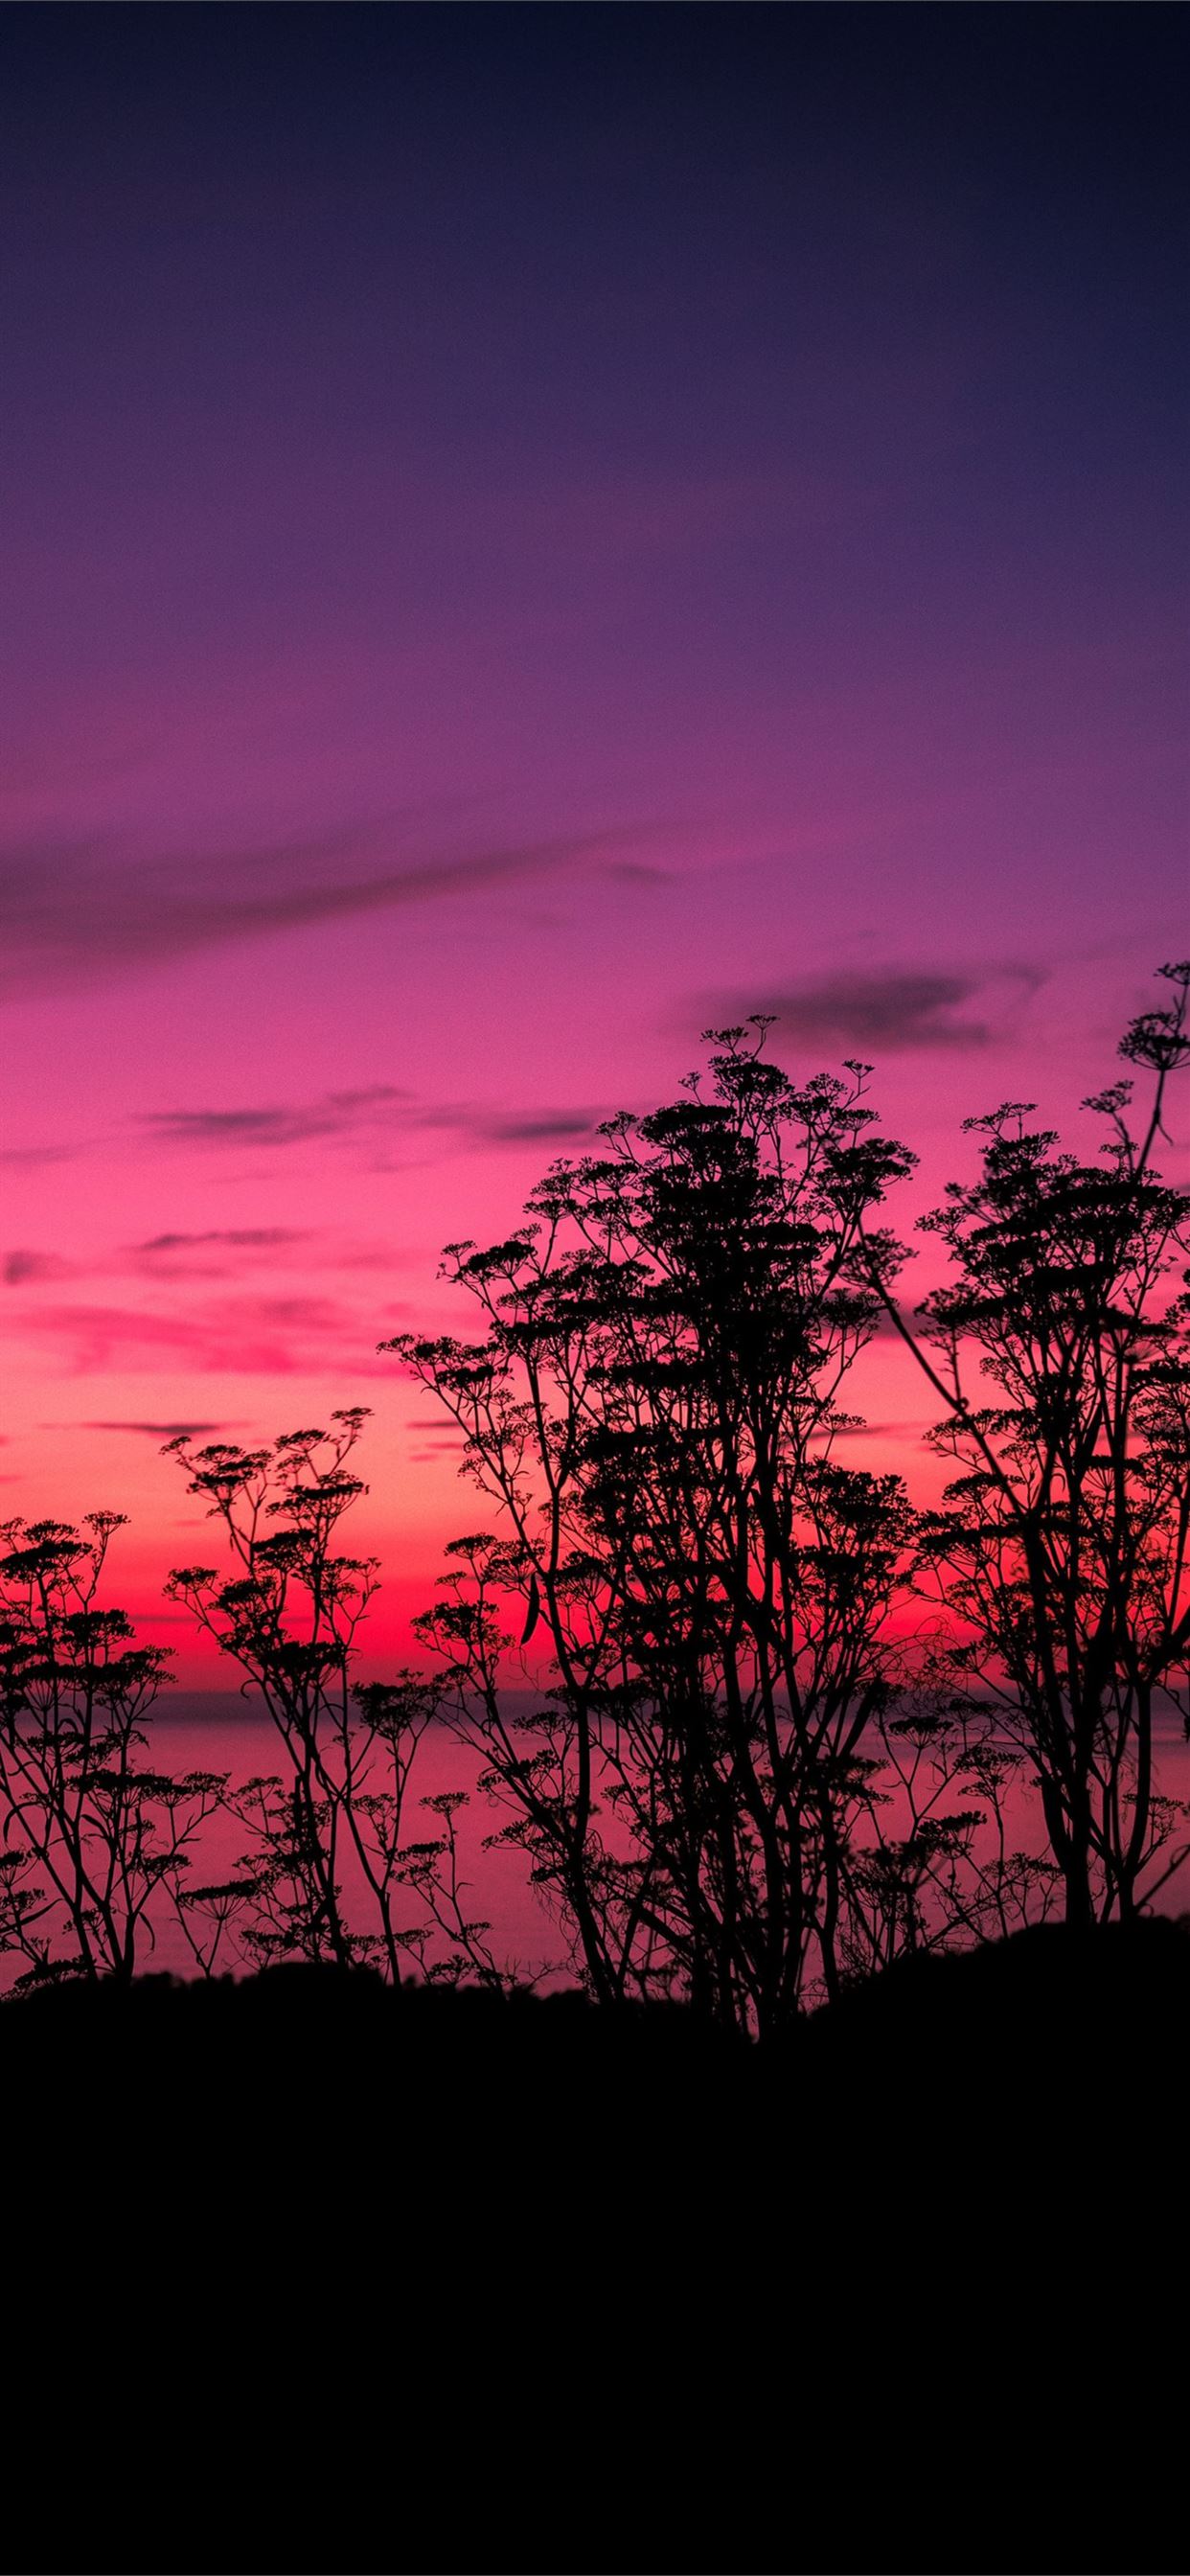 pink sunset lake side 5k iPhone 11 Wallpaper Free Download